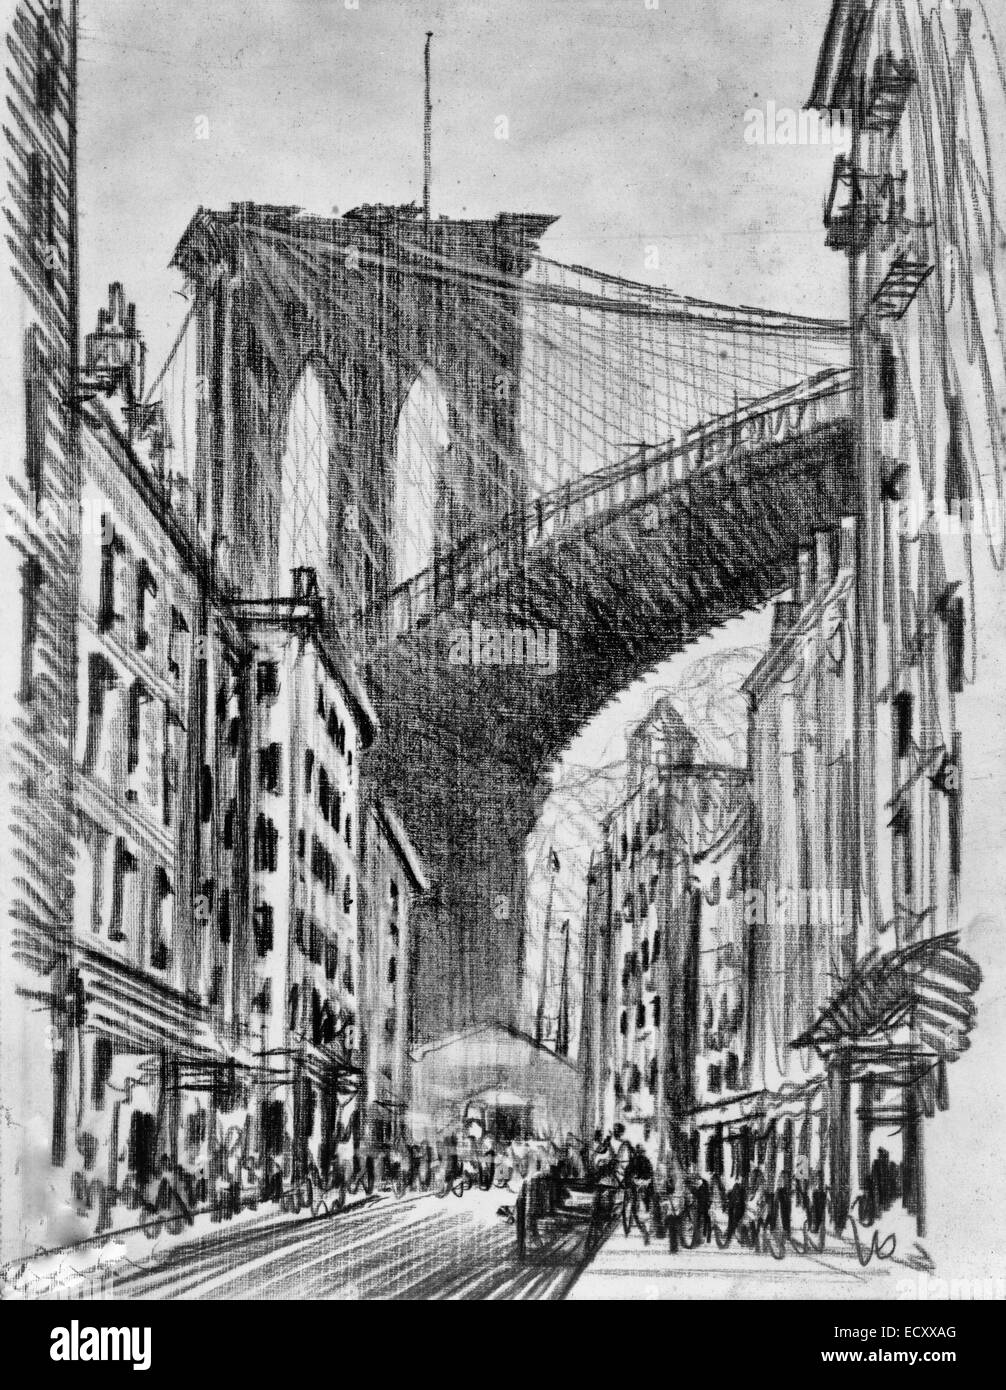 Mietskasernen unter Brooklyn Bridge (Brooklyn Bridge Mietskasernen) - New York City. Diagonale Blick auf überfüllten Straßen, kritzelte Figuren auf Gehwegen, Wagen auf der Straße. Im Hintergrund ist die Szene dominieren Brooklyn Bridge, zwei Bögen der Unterstützung zeigt Himmel darüber hinaus, ca. 1909 Stockfoto